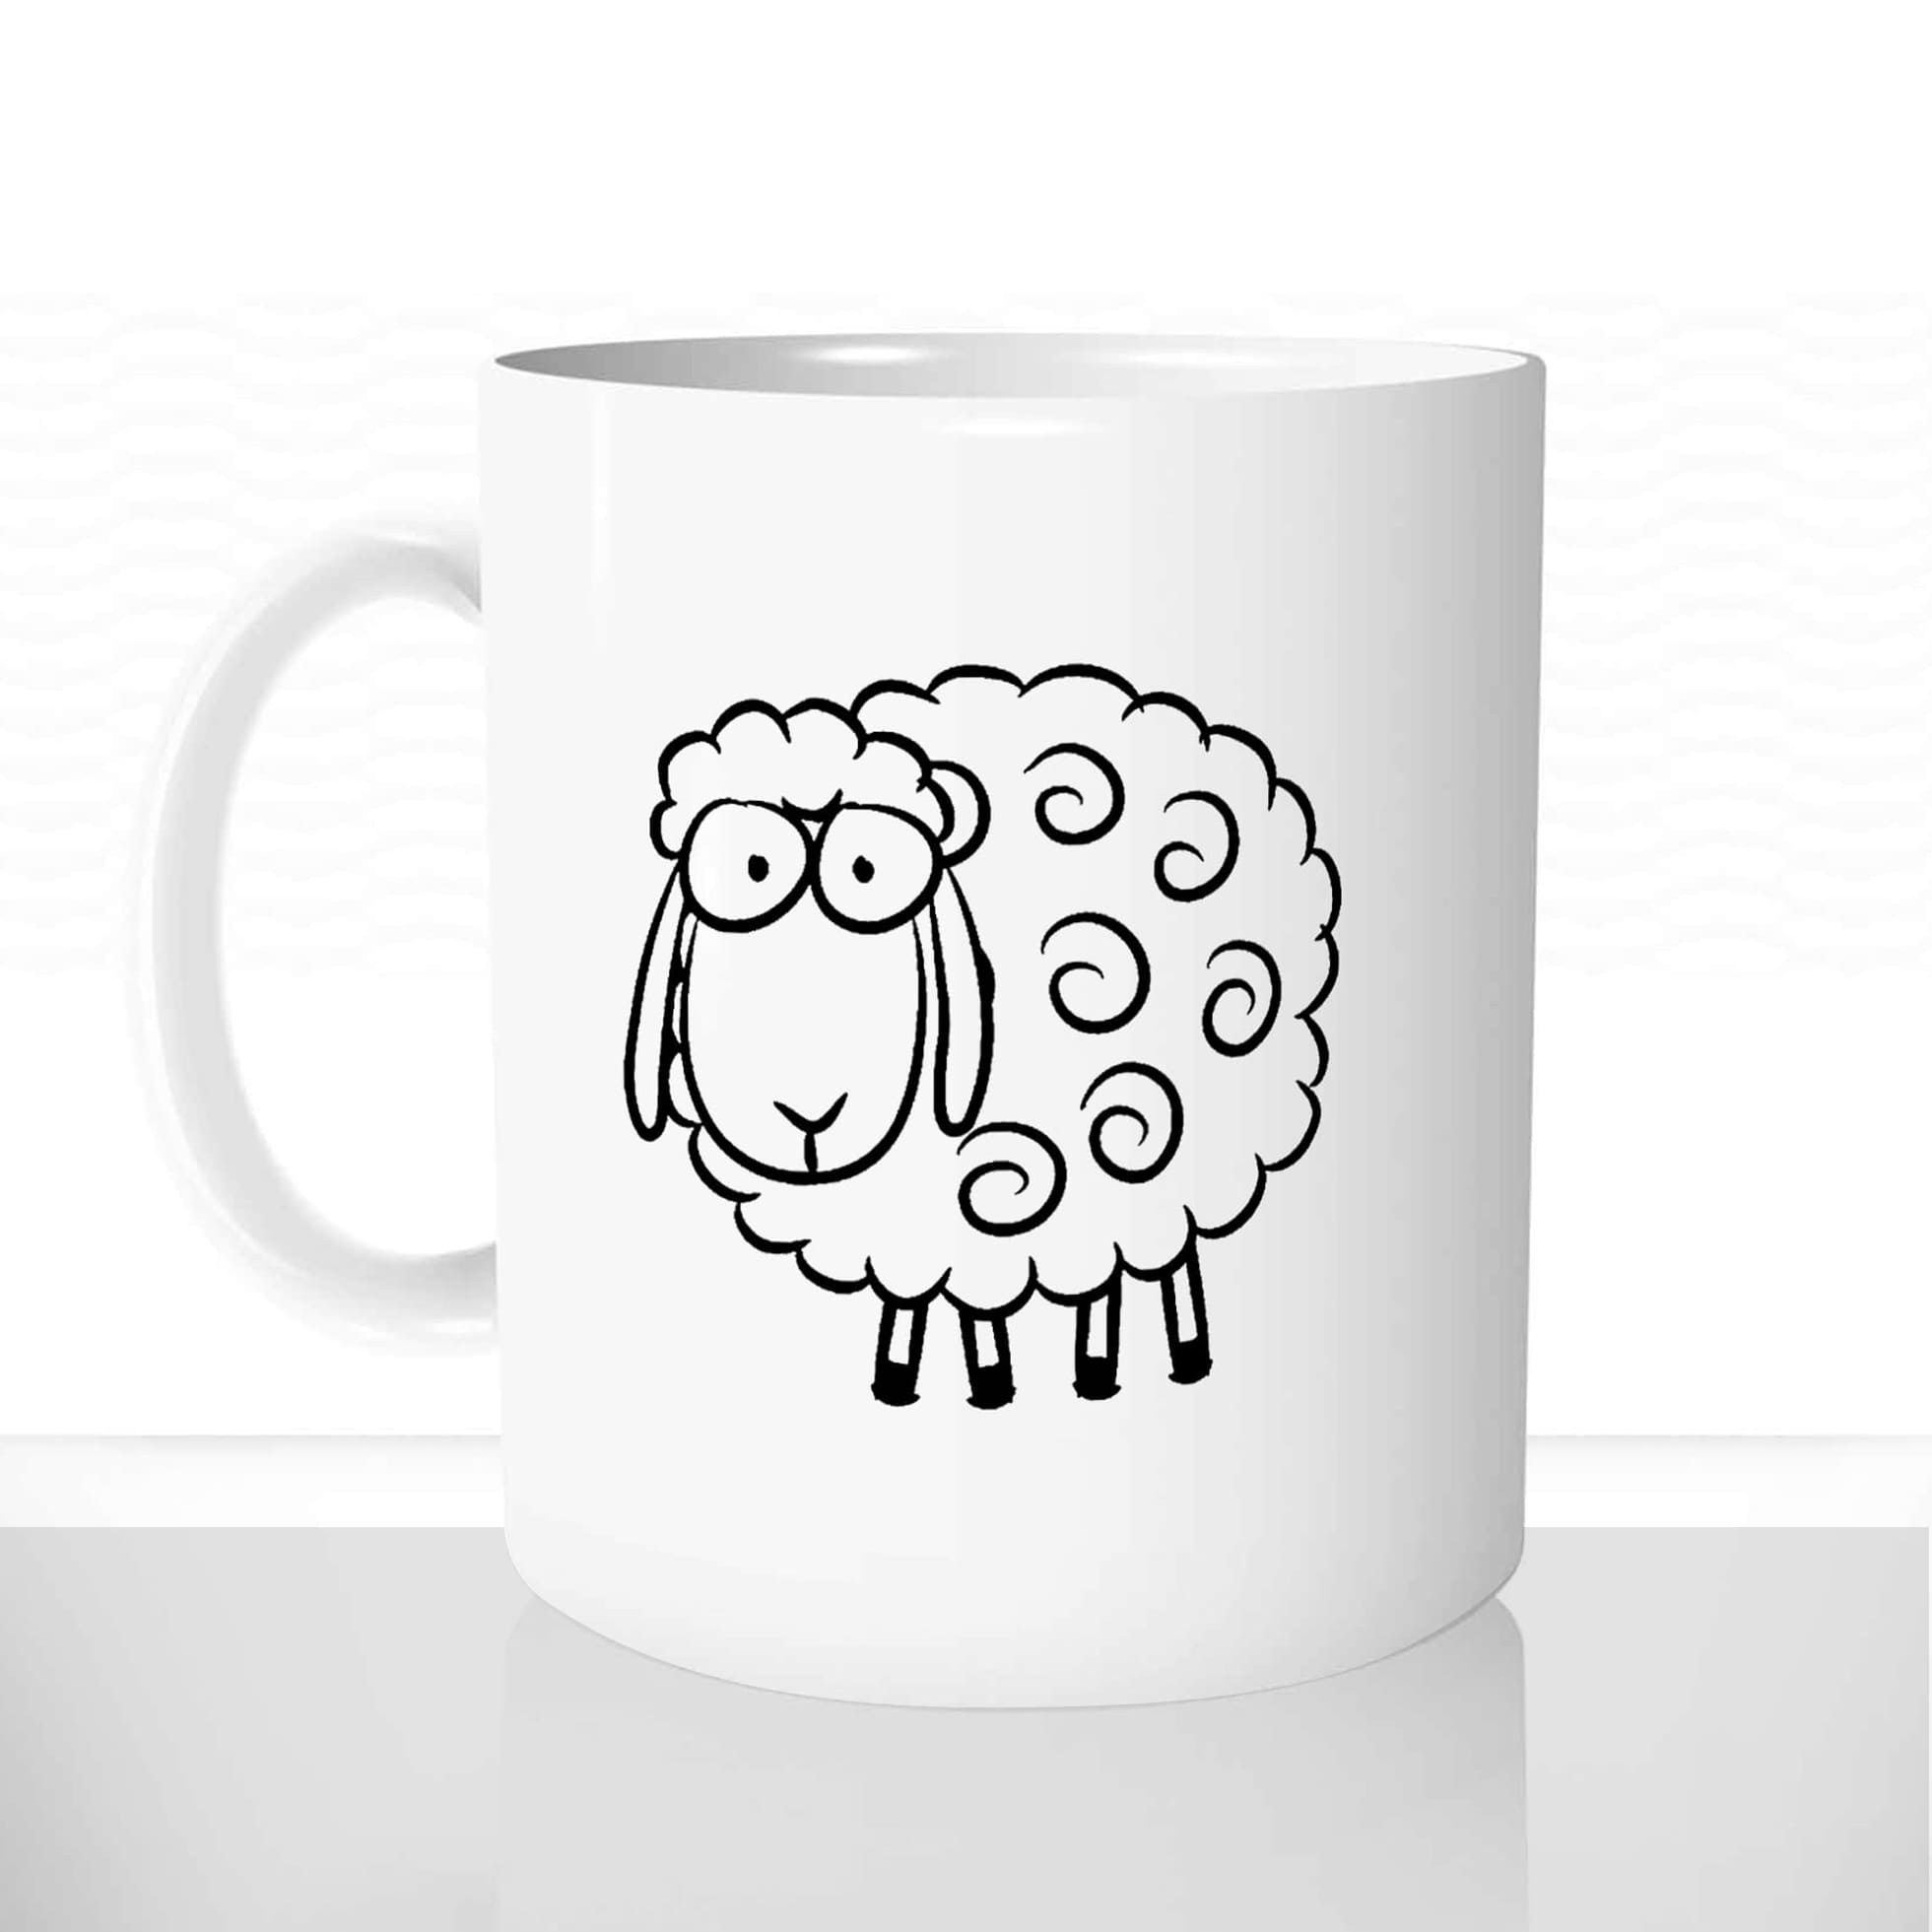 mug classique en céramique 11oz personnalisé personnalisable photo dessin mignon animal mouton offrir cadeau chou